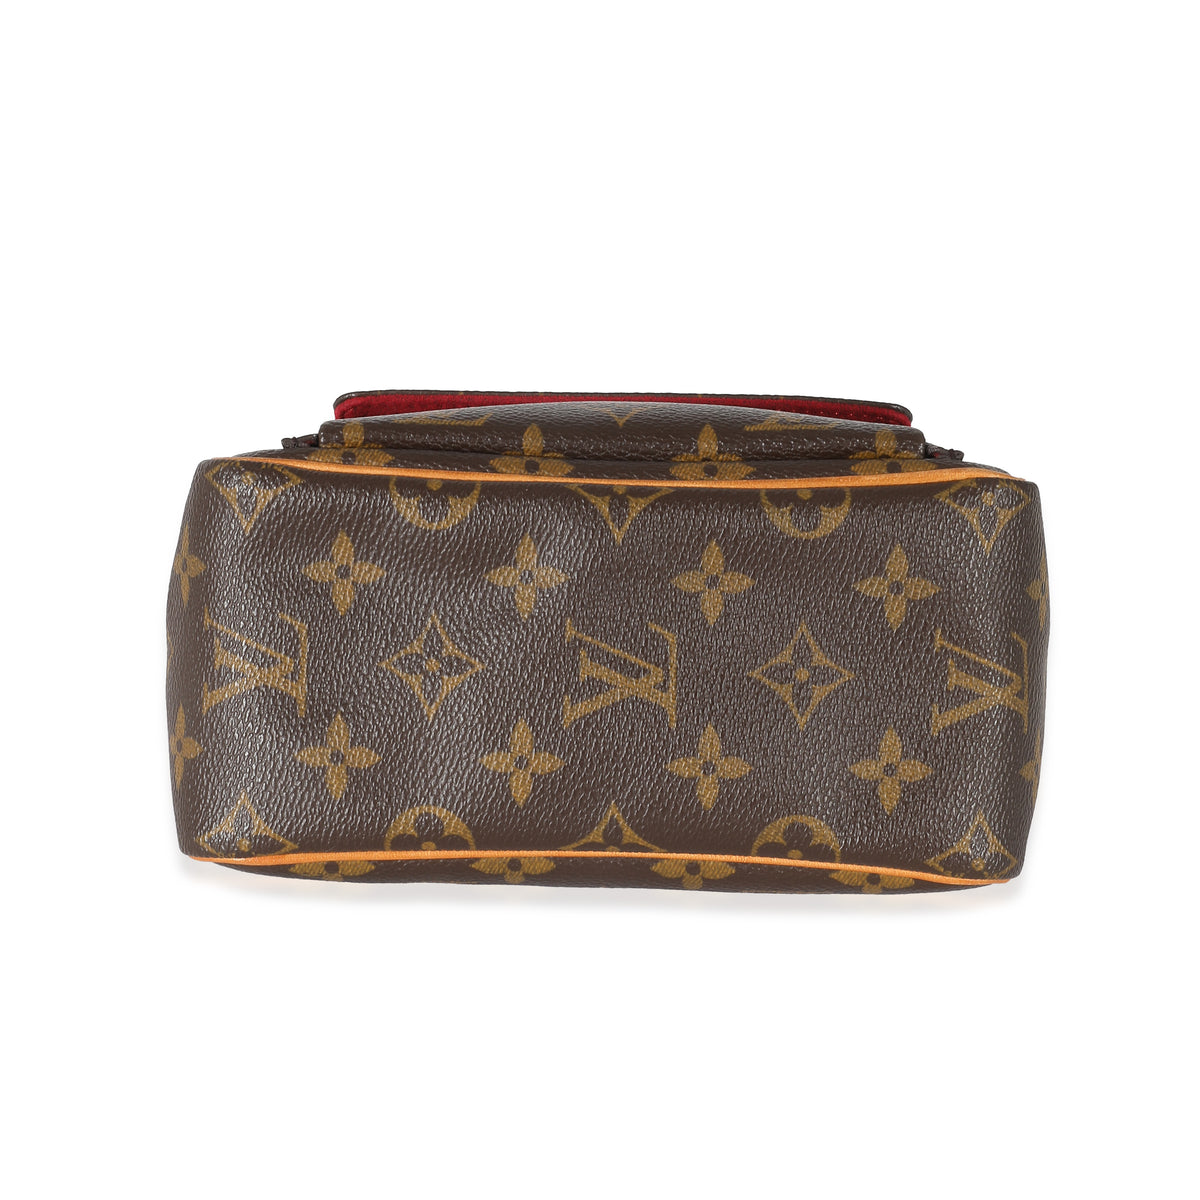 Louis Vuitton Viva Cite Handbag Monogram Canvas PM - ShopStyle